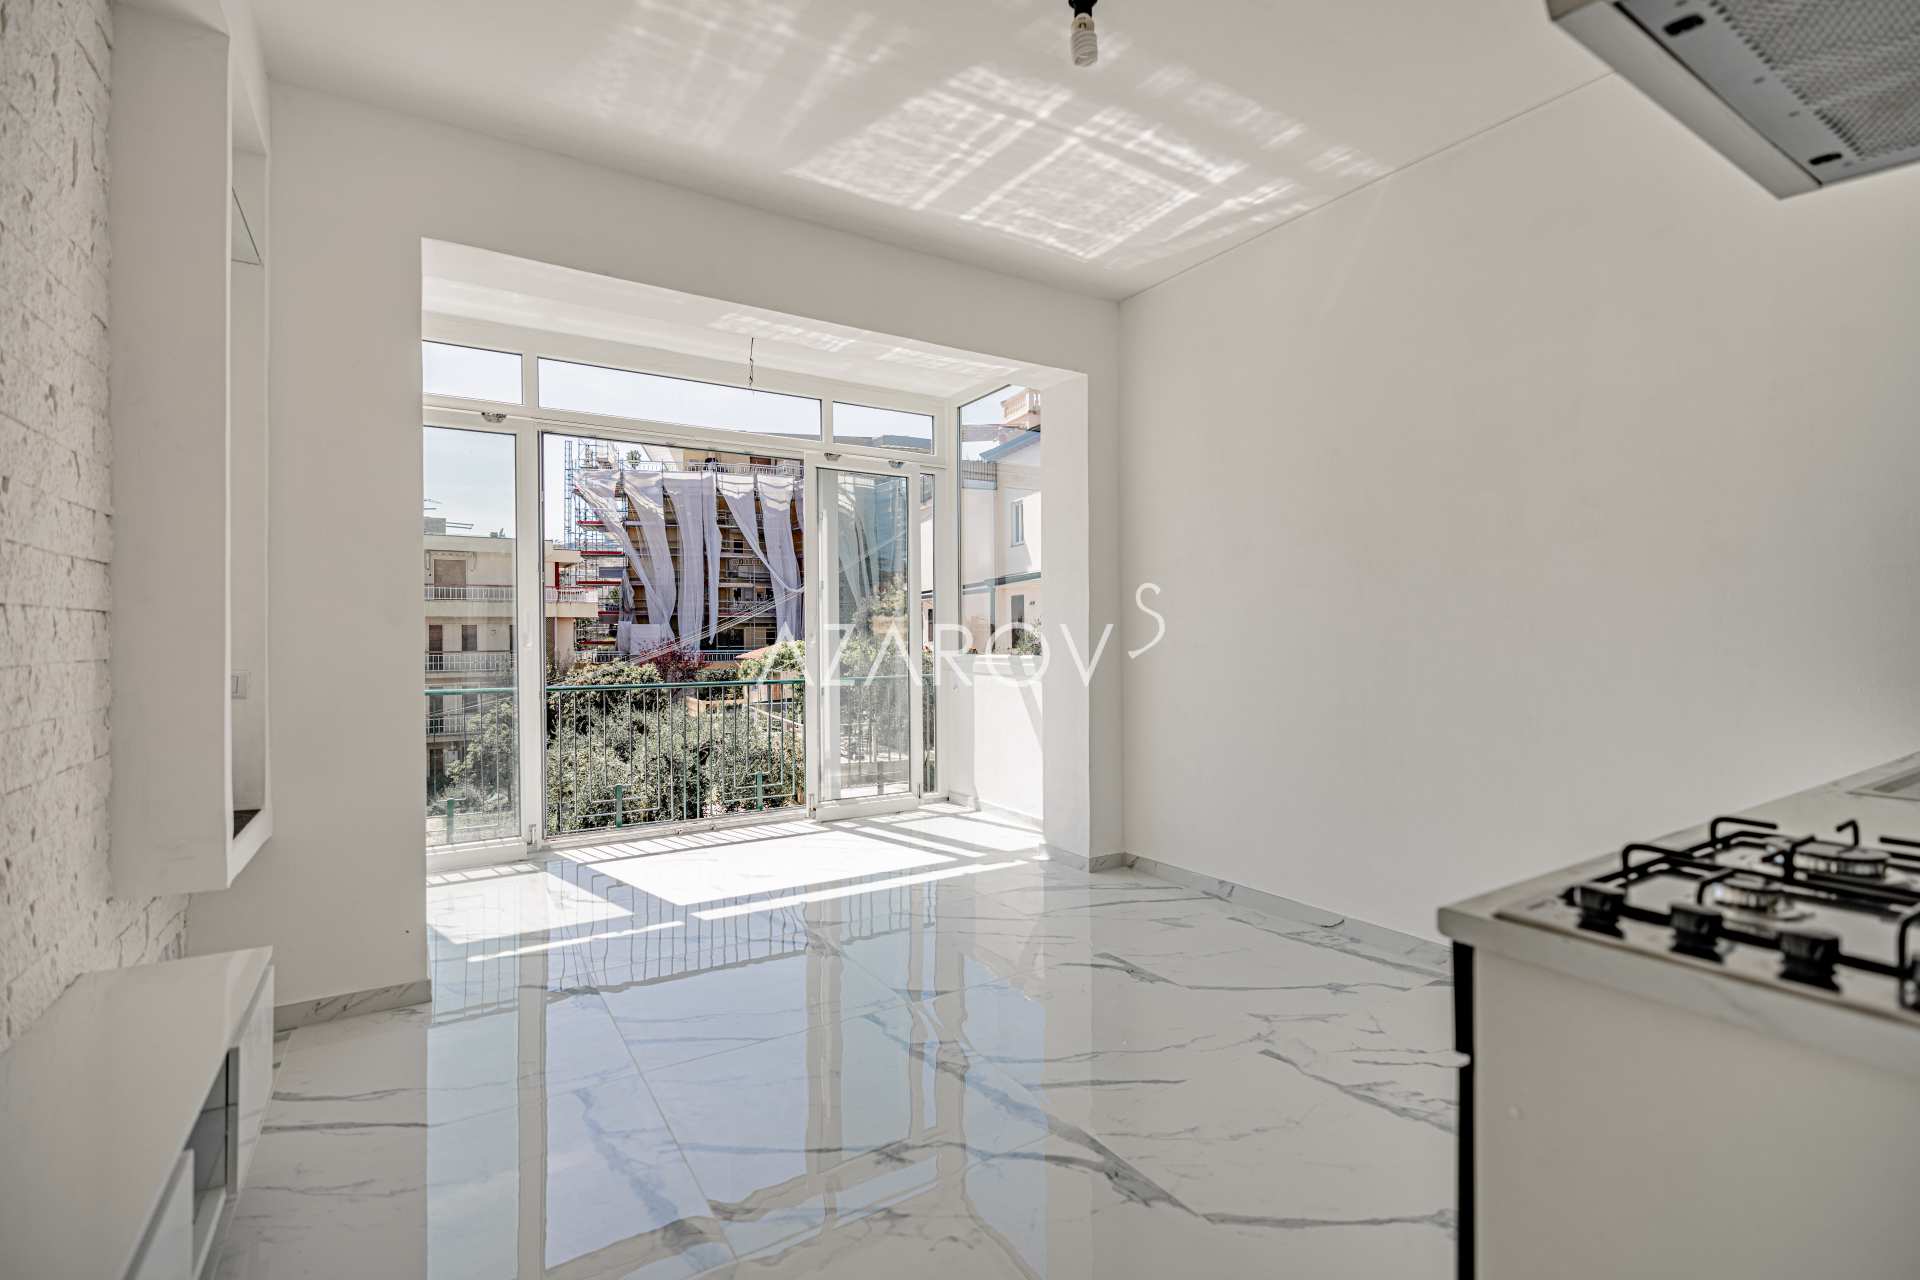 Nuevo apartamento de 60 m2 en Sanremo cerca del mar